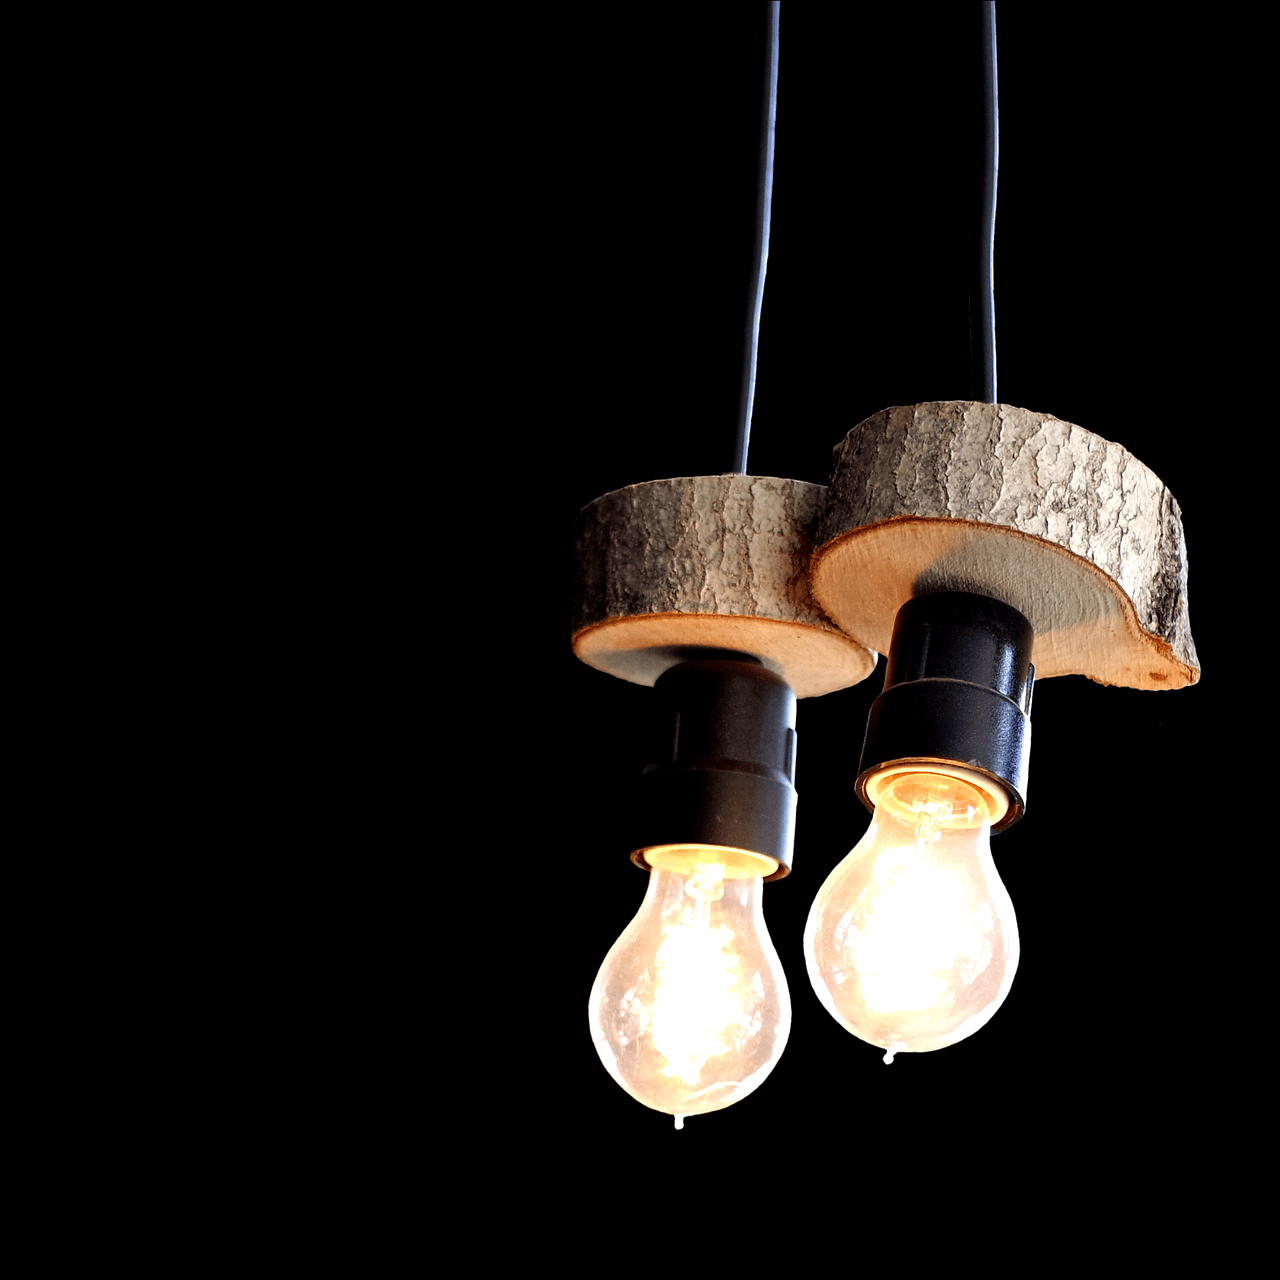 L'image montre une lampe suspendue faîte dans des rondins de bois